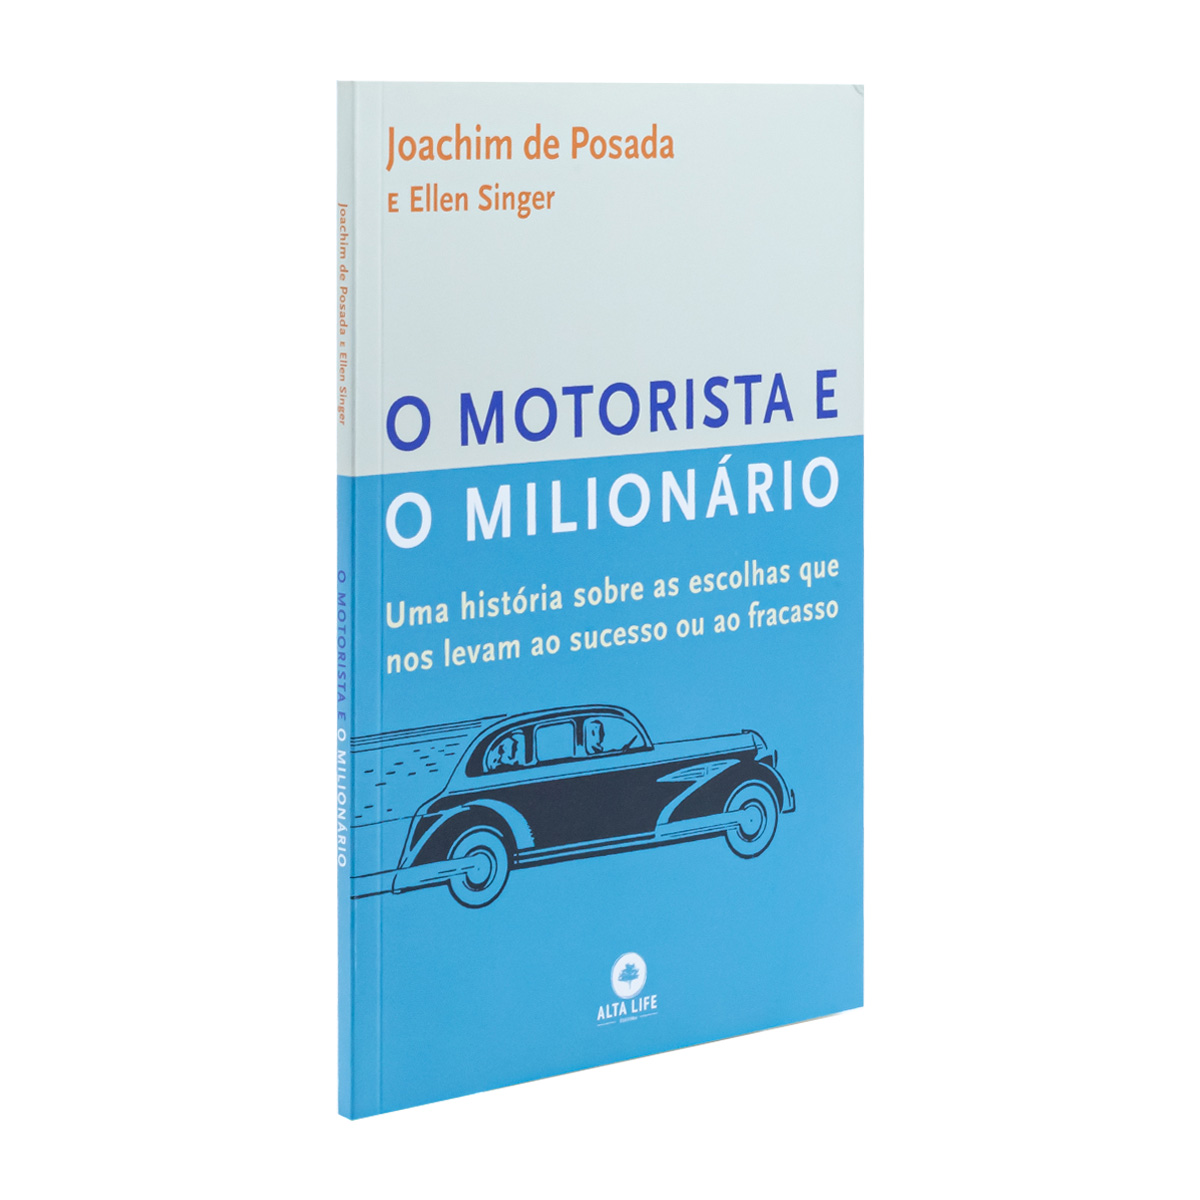 O Motorista e o Milionário - Joachim de Posada & Ellen Singer